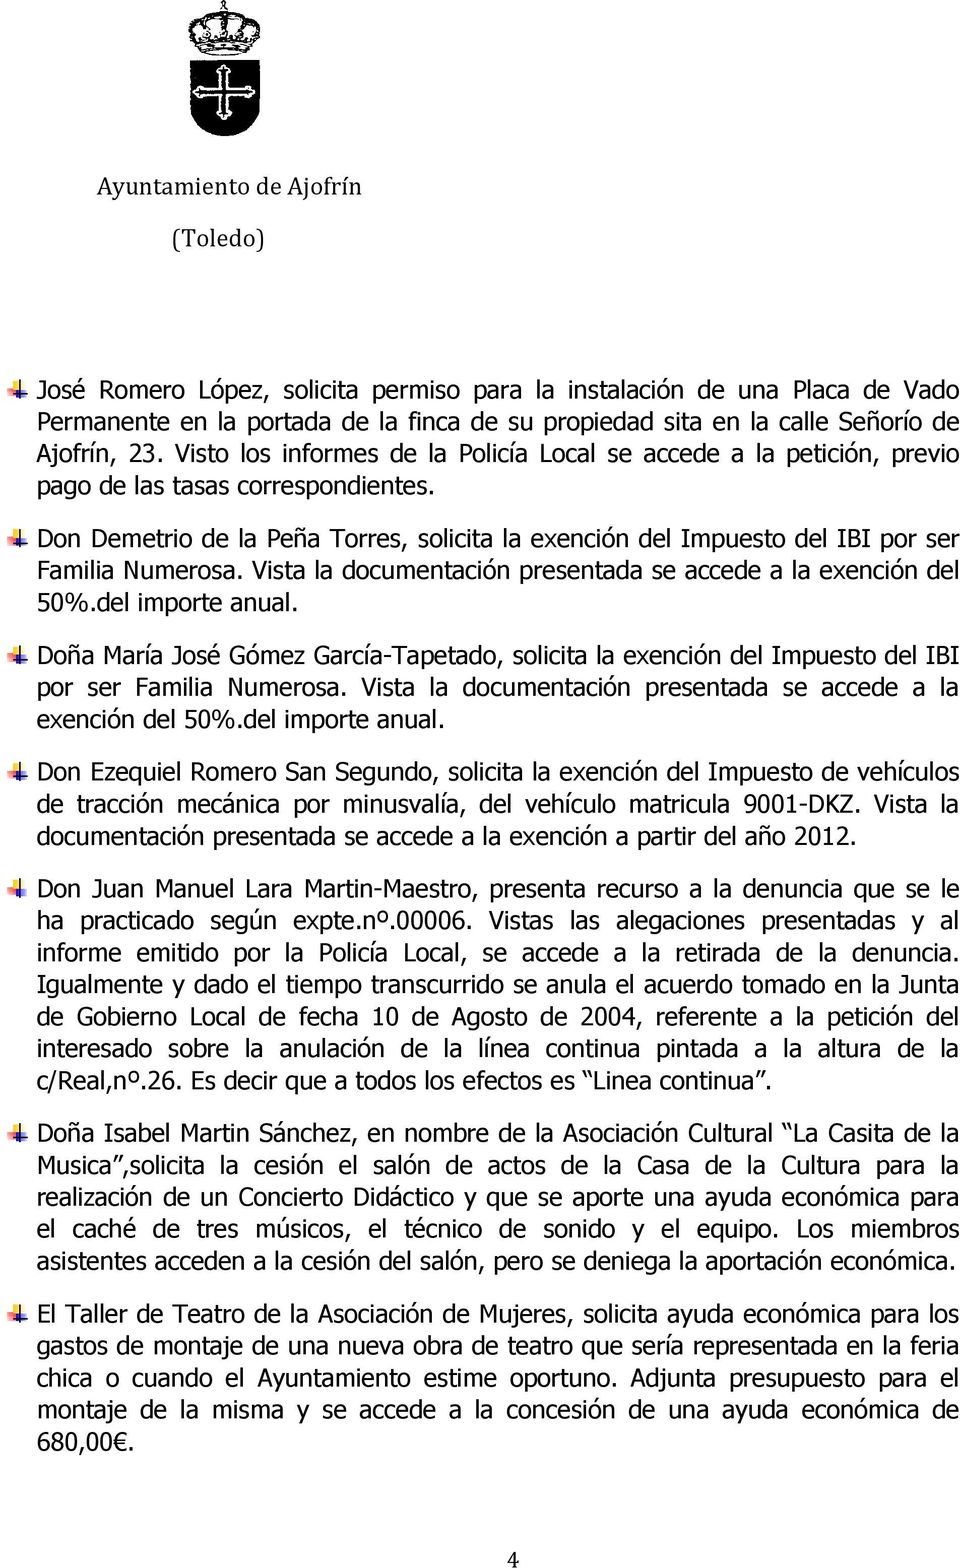 Vista la documentación presentada se accede a la exención del 50%.del importe anual. Doña María José Gómez García-Tapetado, solicita la exención del Impuesto del IBI por ser Familia Numerosa.